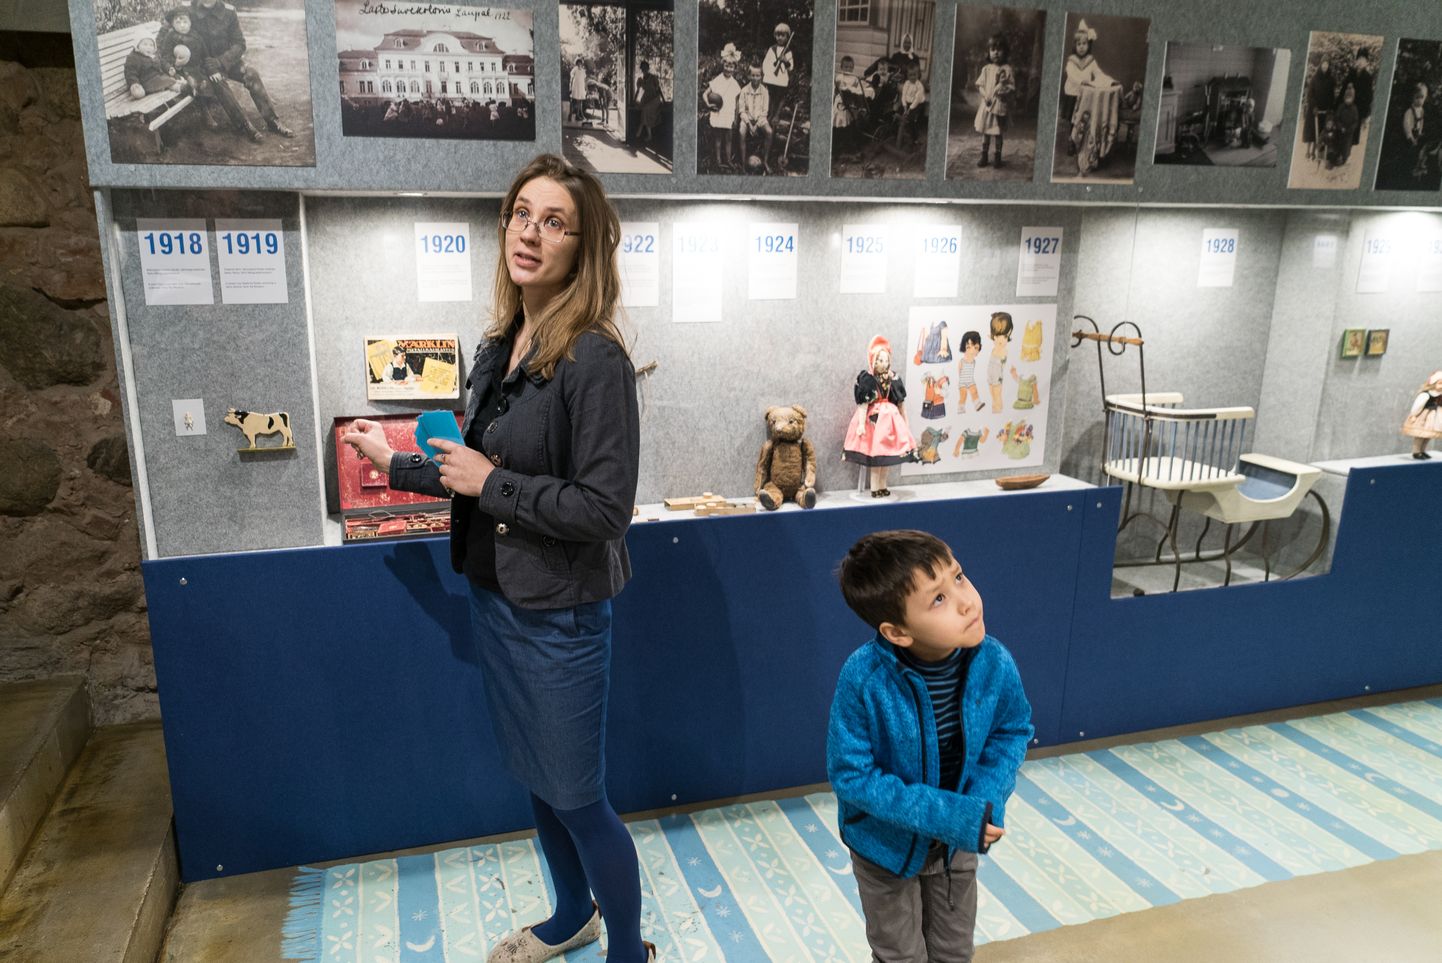 Näituse kuraator Helena Grauberg, kes perepäevale oli tulnud oma poja Finzoga, rääkis vitriinidesse paigutatud asjadest.